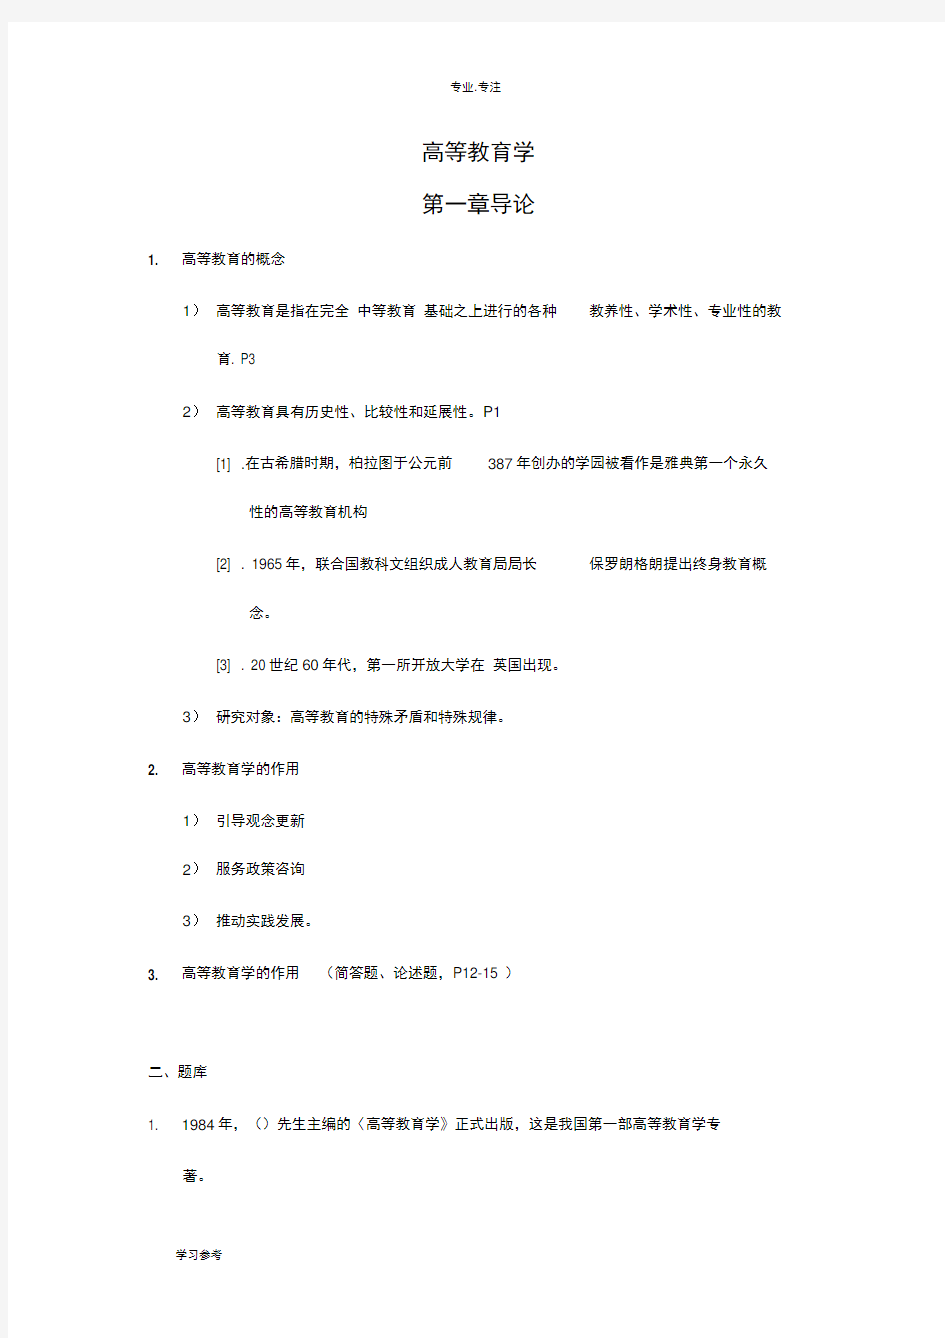 新版教材_2018江苏省高等教育学考点整理和试题库完整